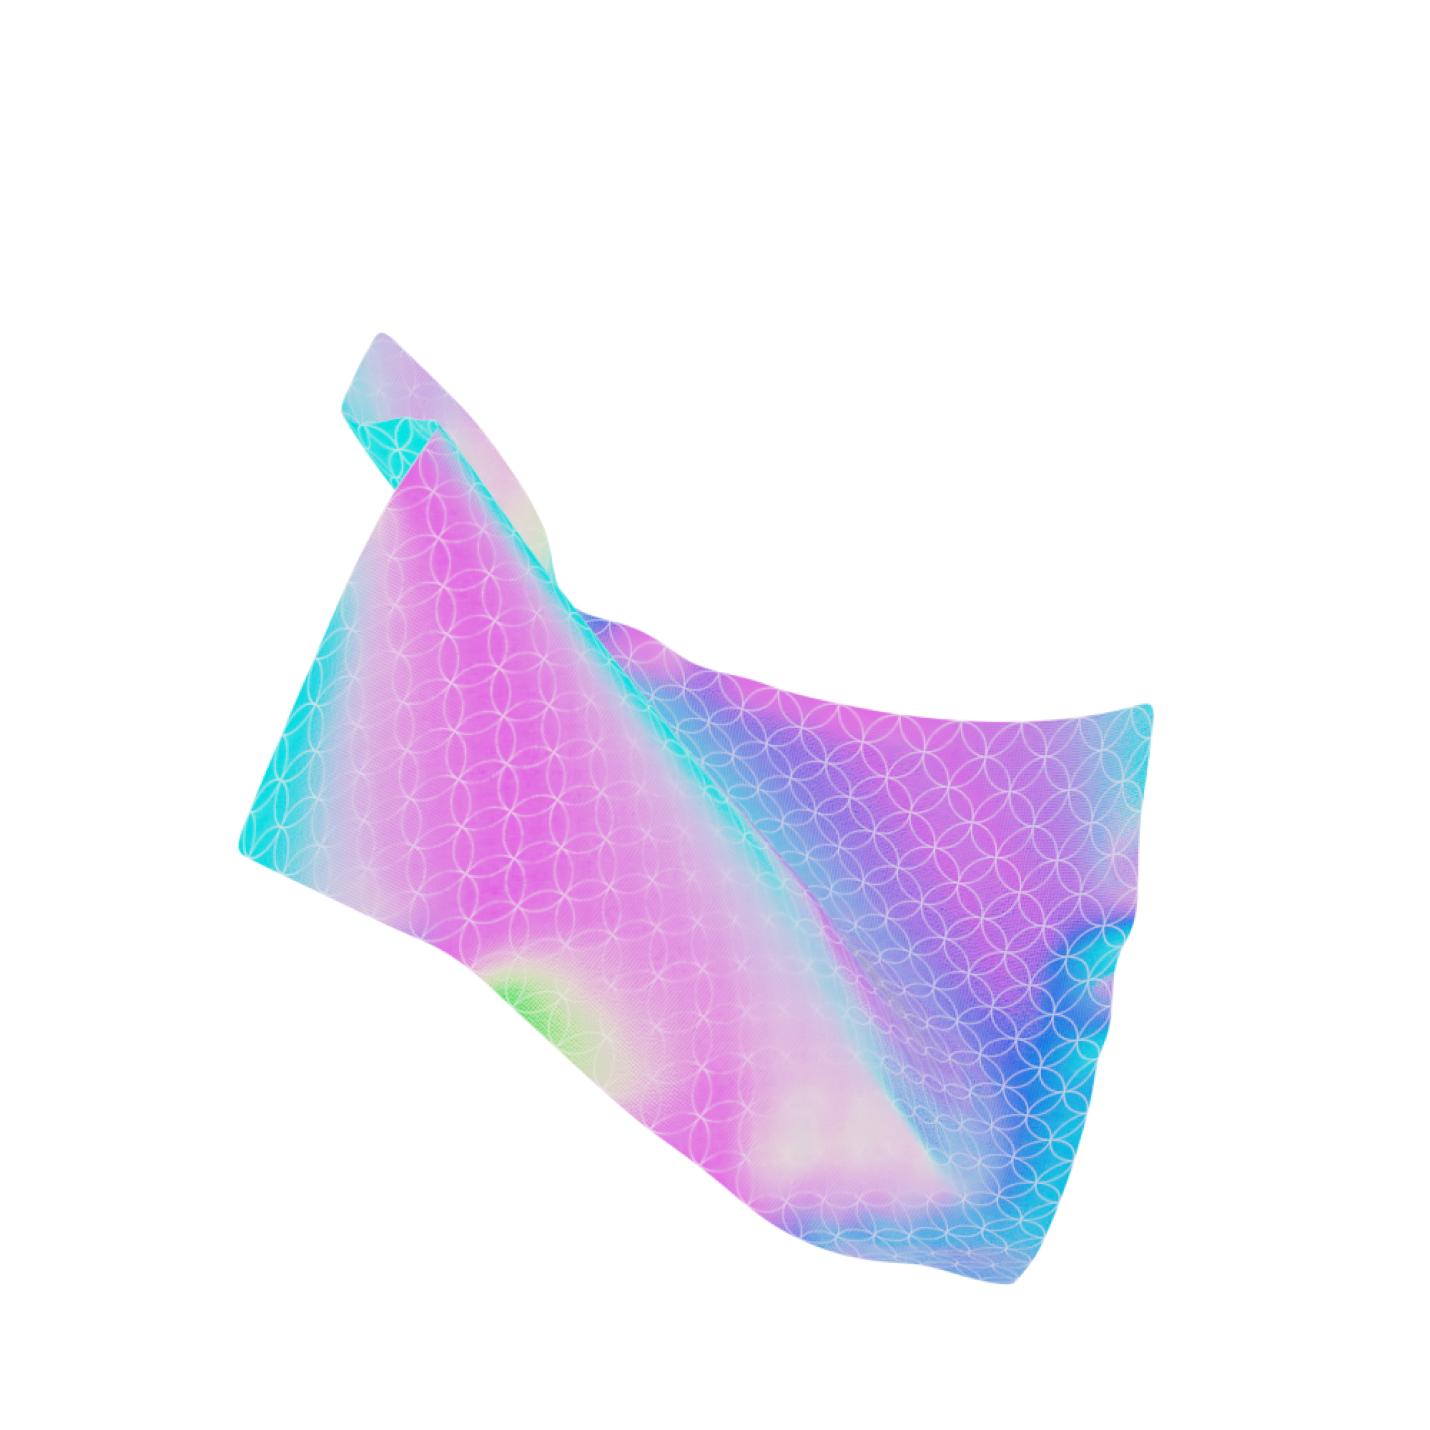 Modele 3D d'un drap holographique